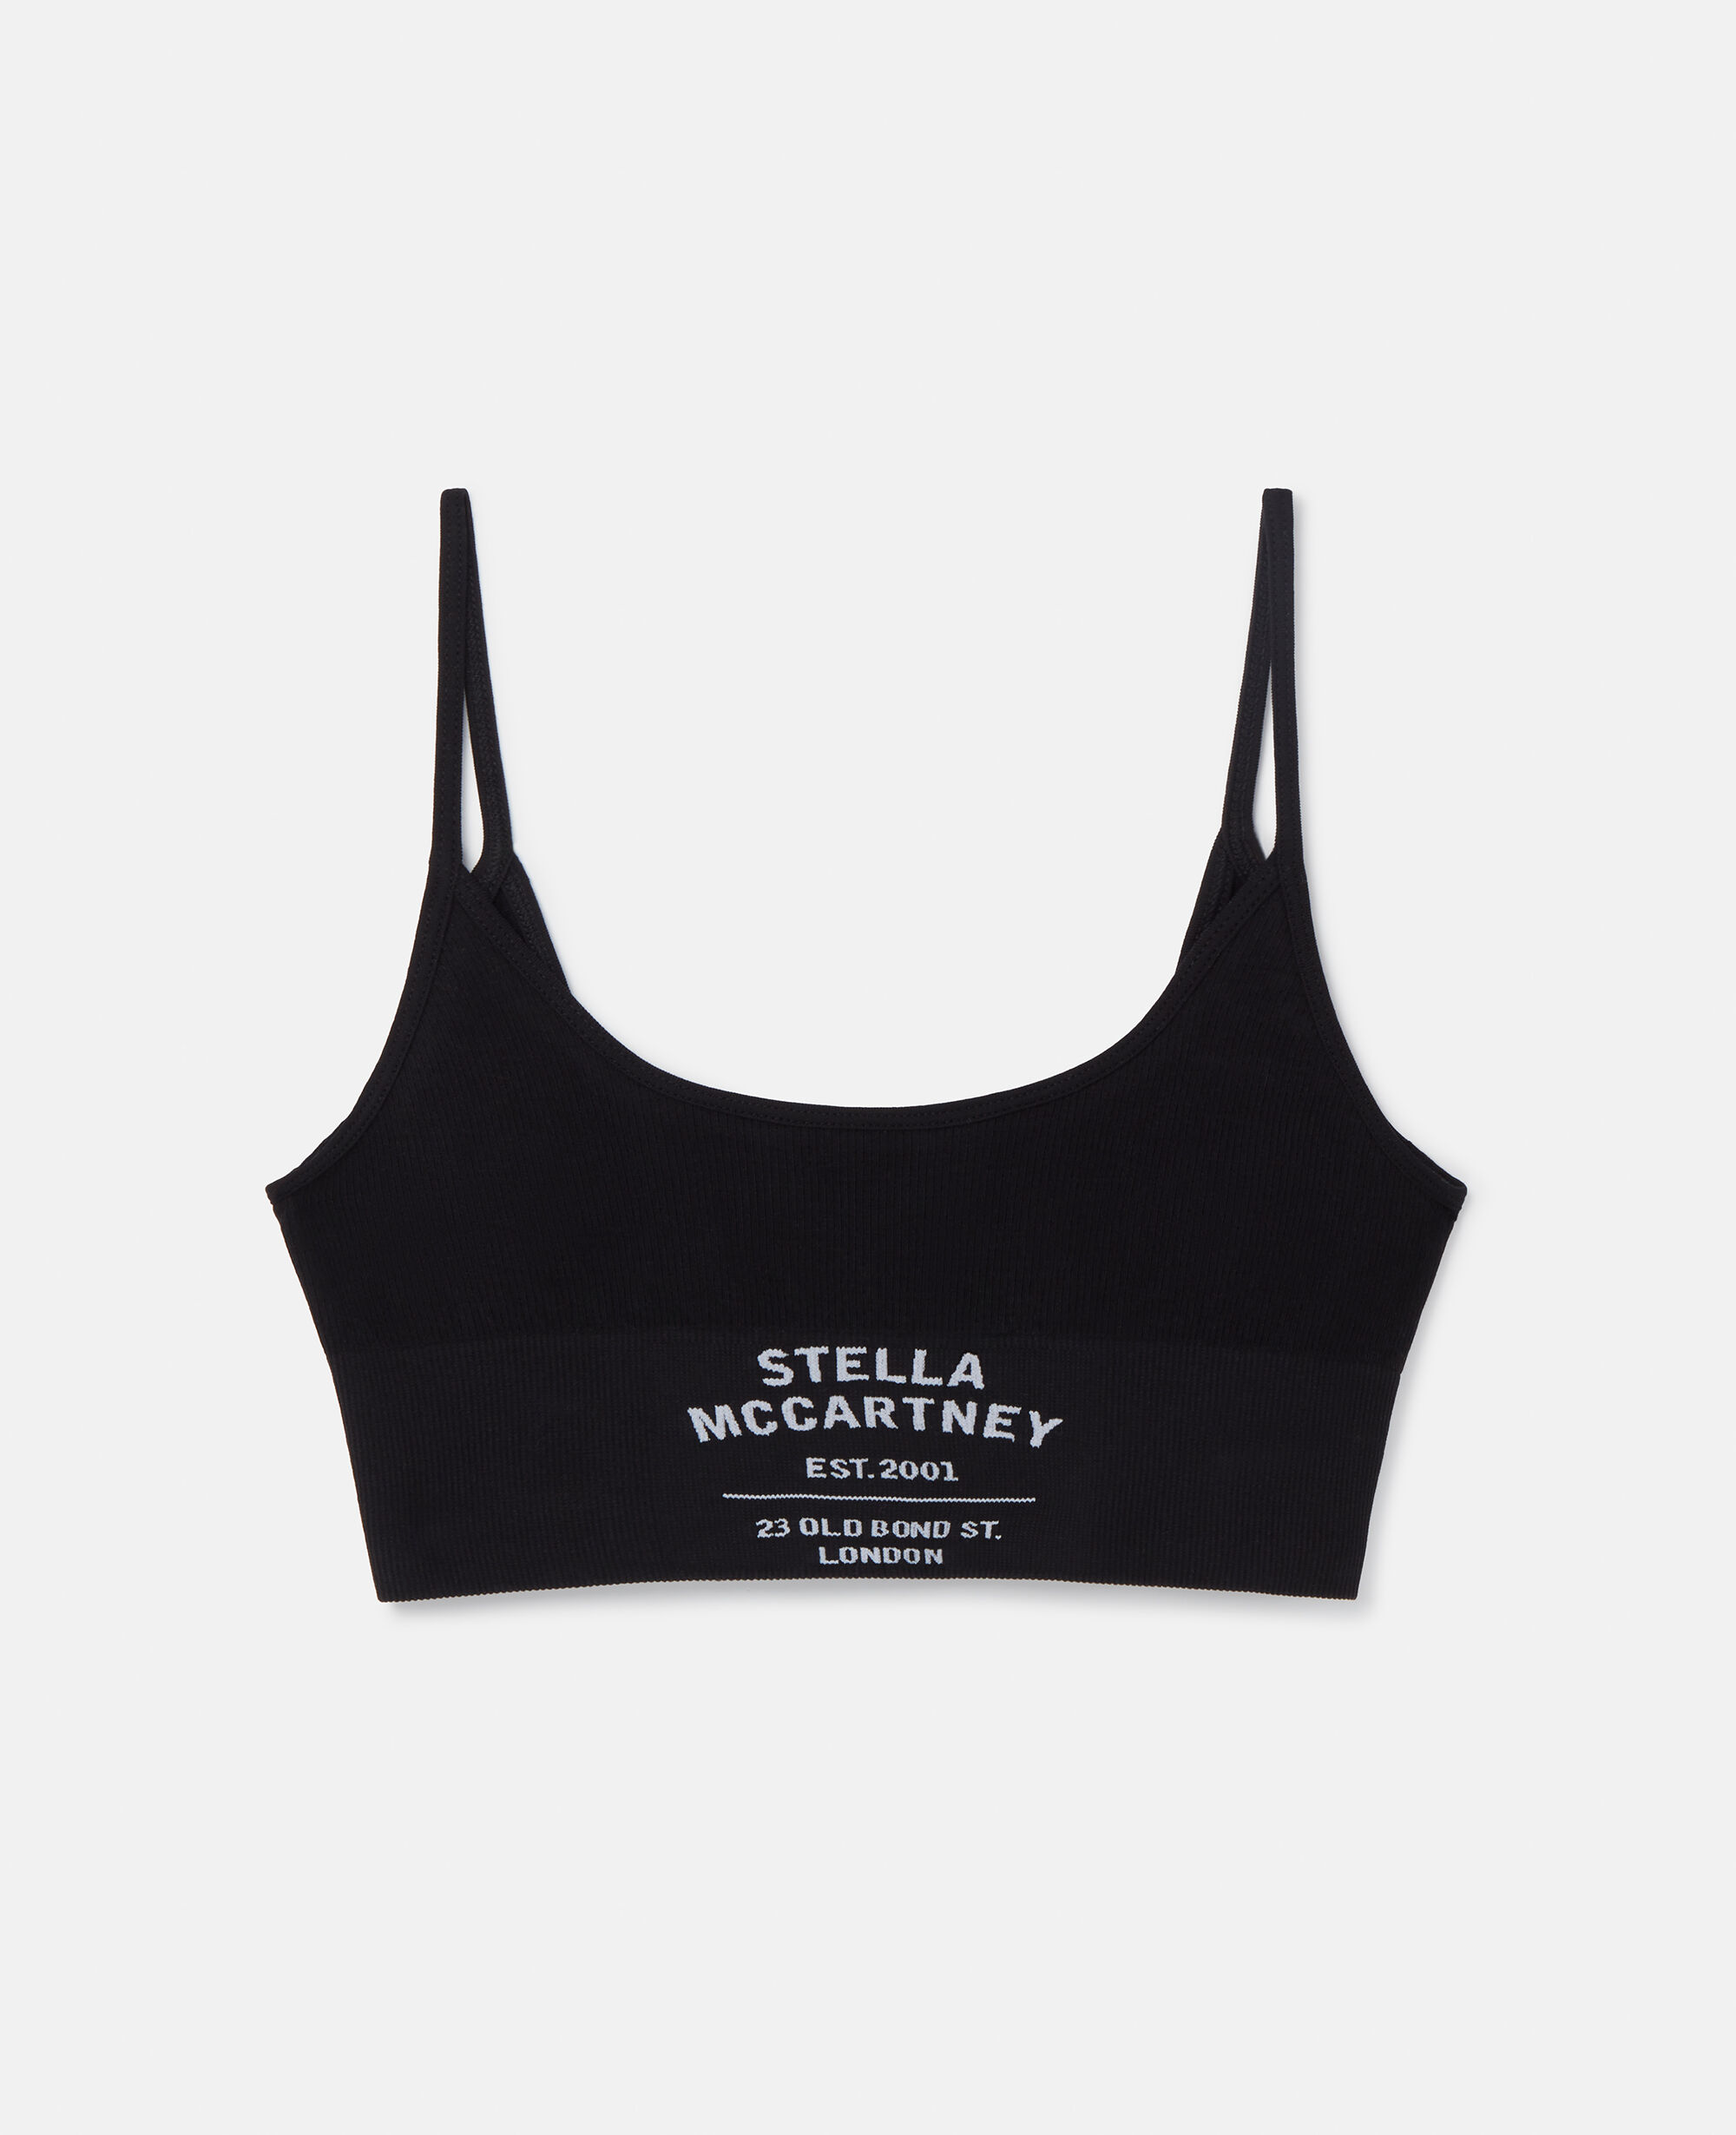 Bralette senza cuciture con logo Stella McCartney Donna Abbigliamento Intimo Reggiseni Senza ferretti 